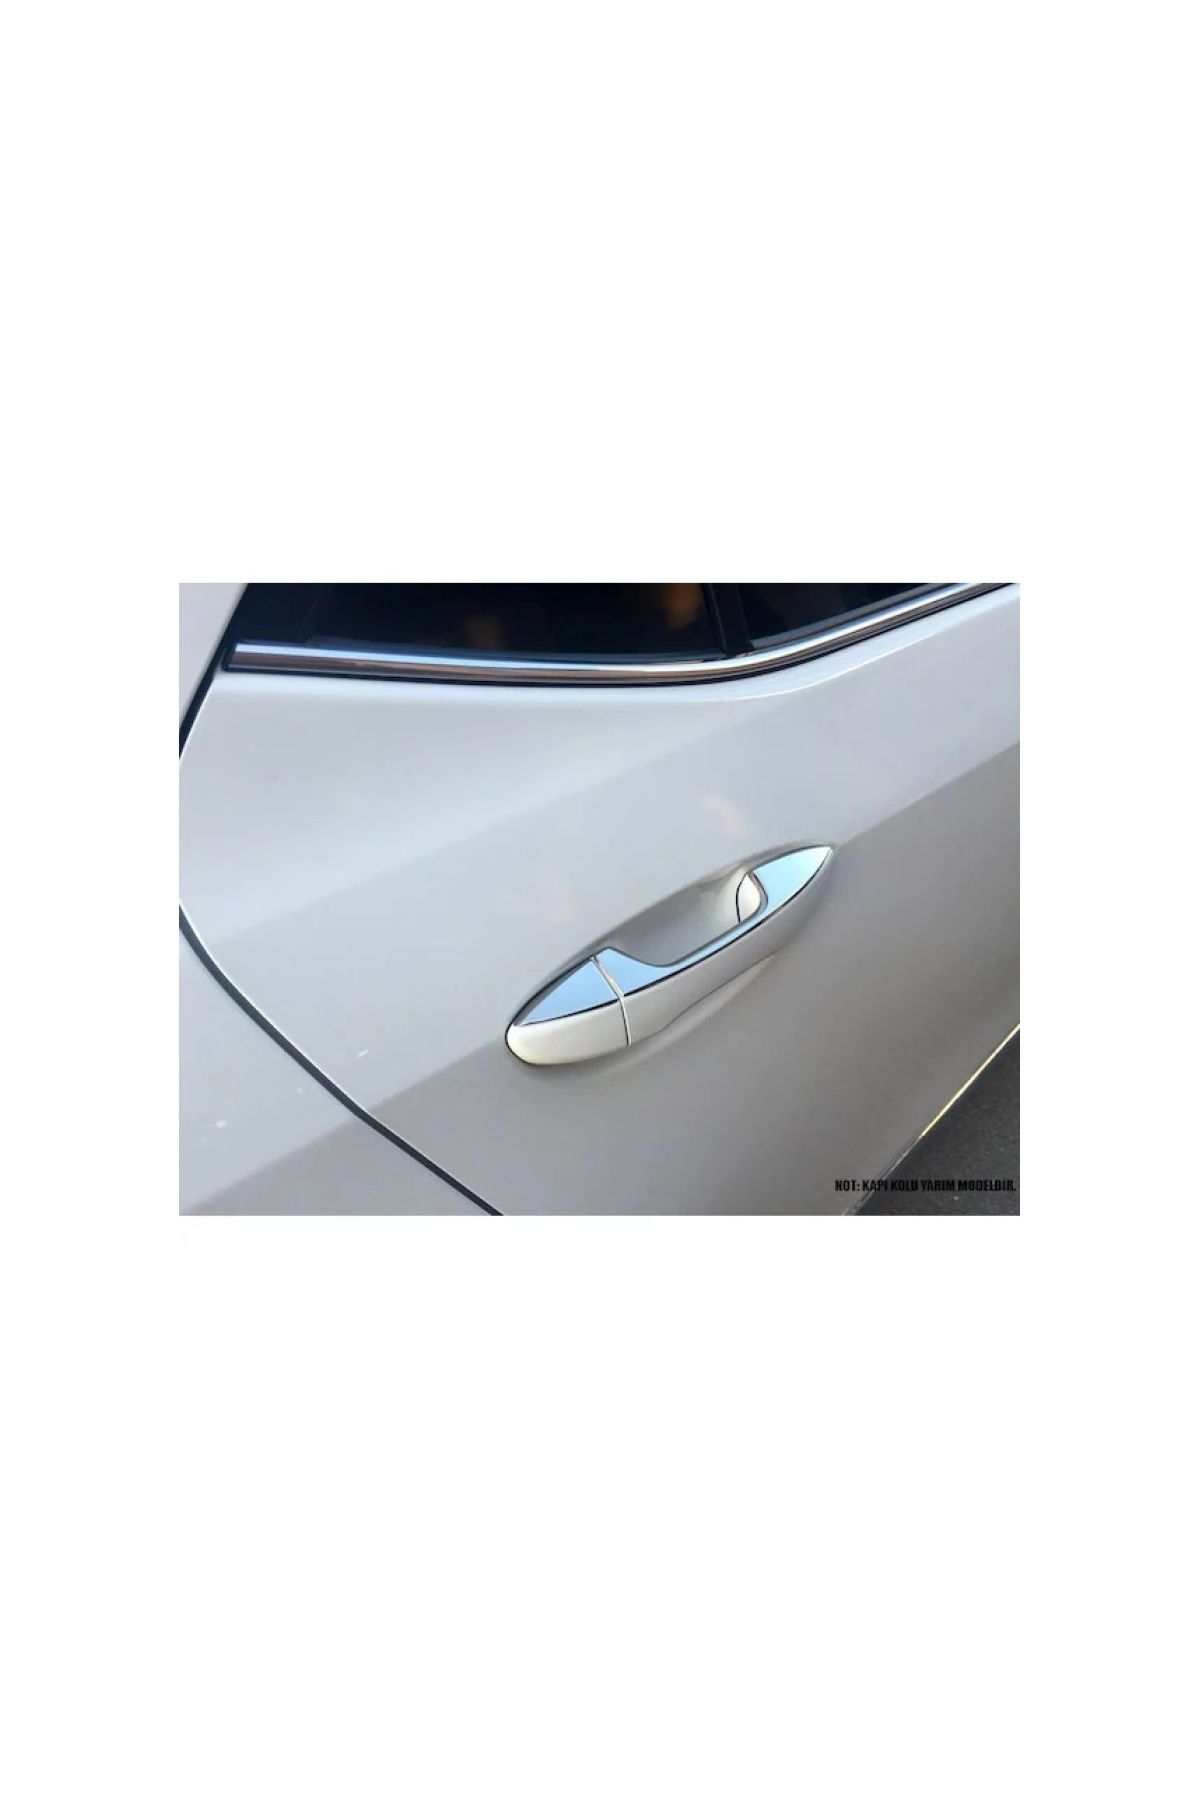 Kumraldede Kapı Kolu Deco Krom 4 Kapı Corolla SD 2013-2018 Arası Modeller İçin